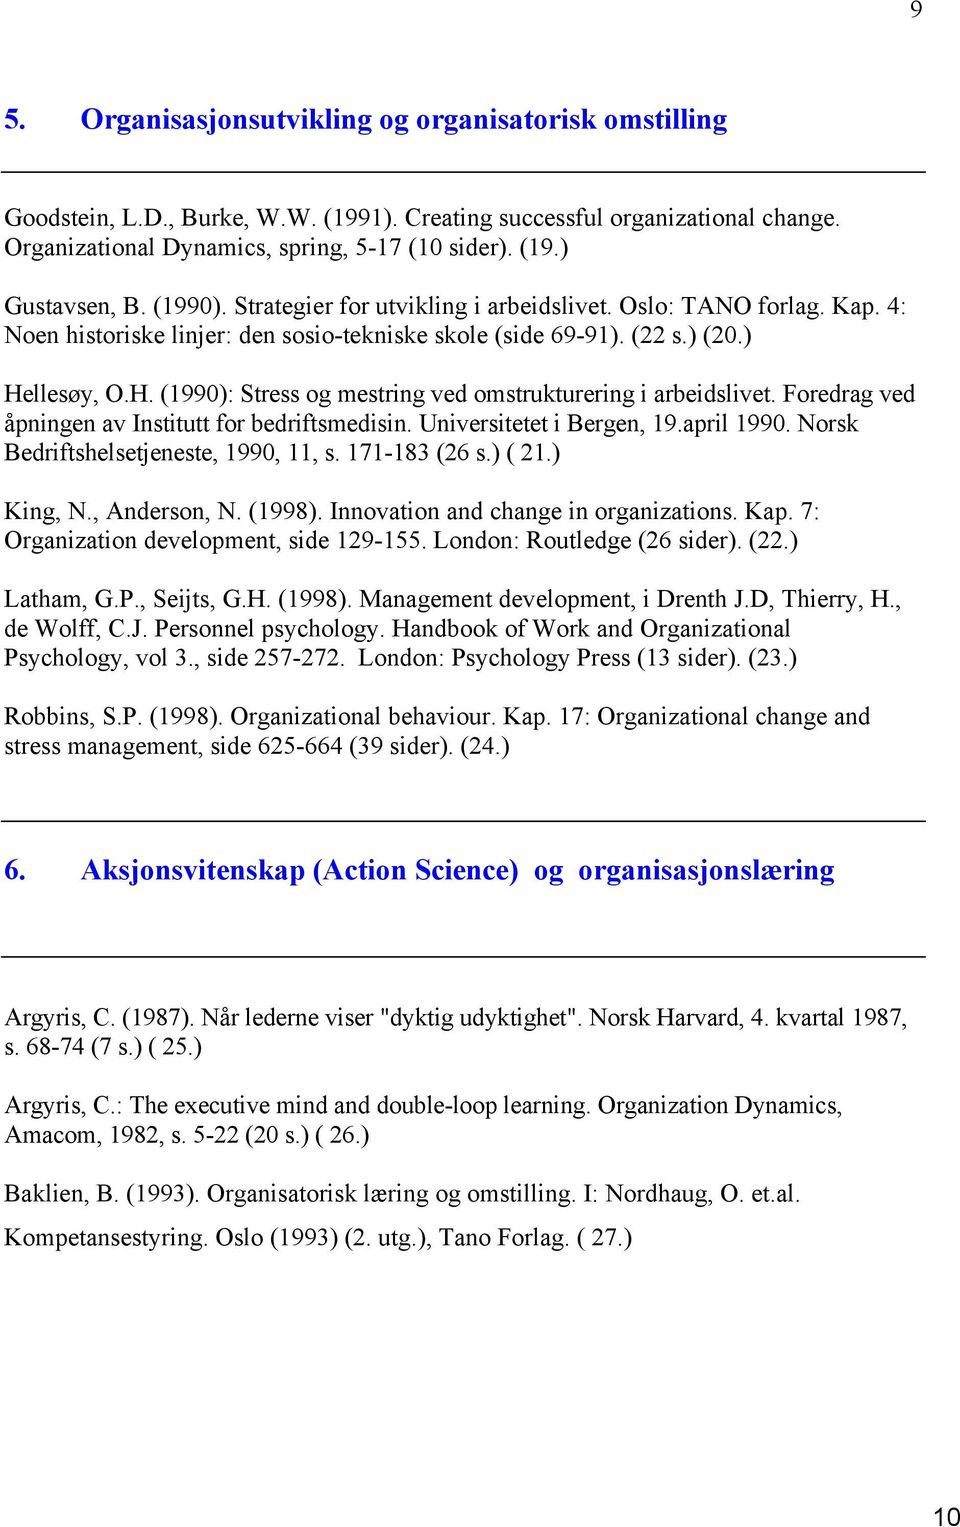 llesøy, O.H. (1990): Stress og mestring ved omstrukturering i arbeidslivet. Foredrag ved åpningen av Institutt for bedriftsmedisin. Universitetet i Bergen, 19.april 1990.